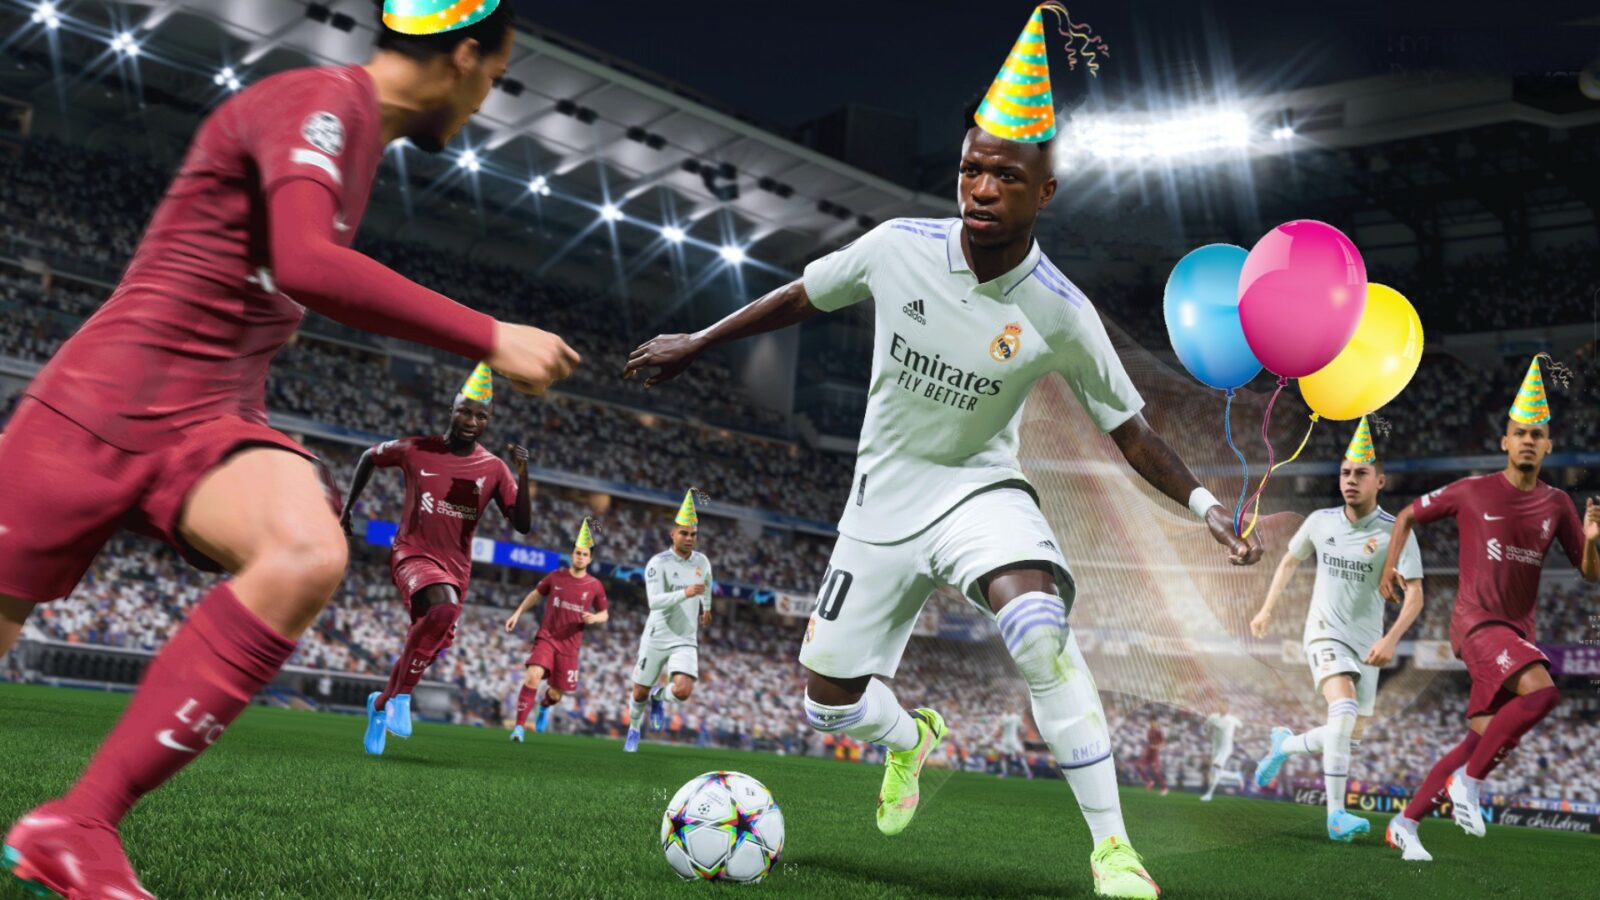 FIFA 23 キャリア モードでは、ハードにプレーし、よりハードにパーティーを楽しむことができます